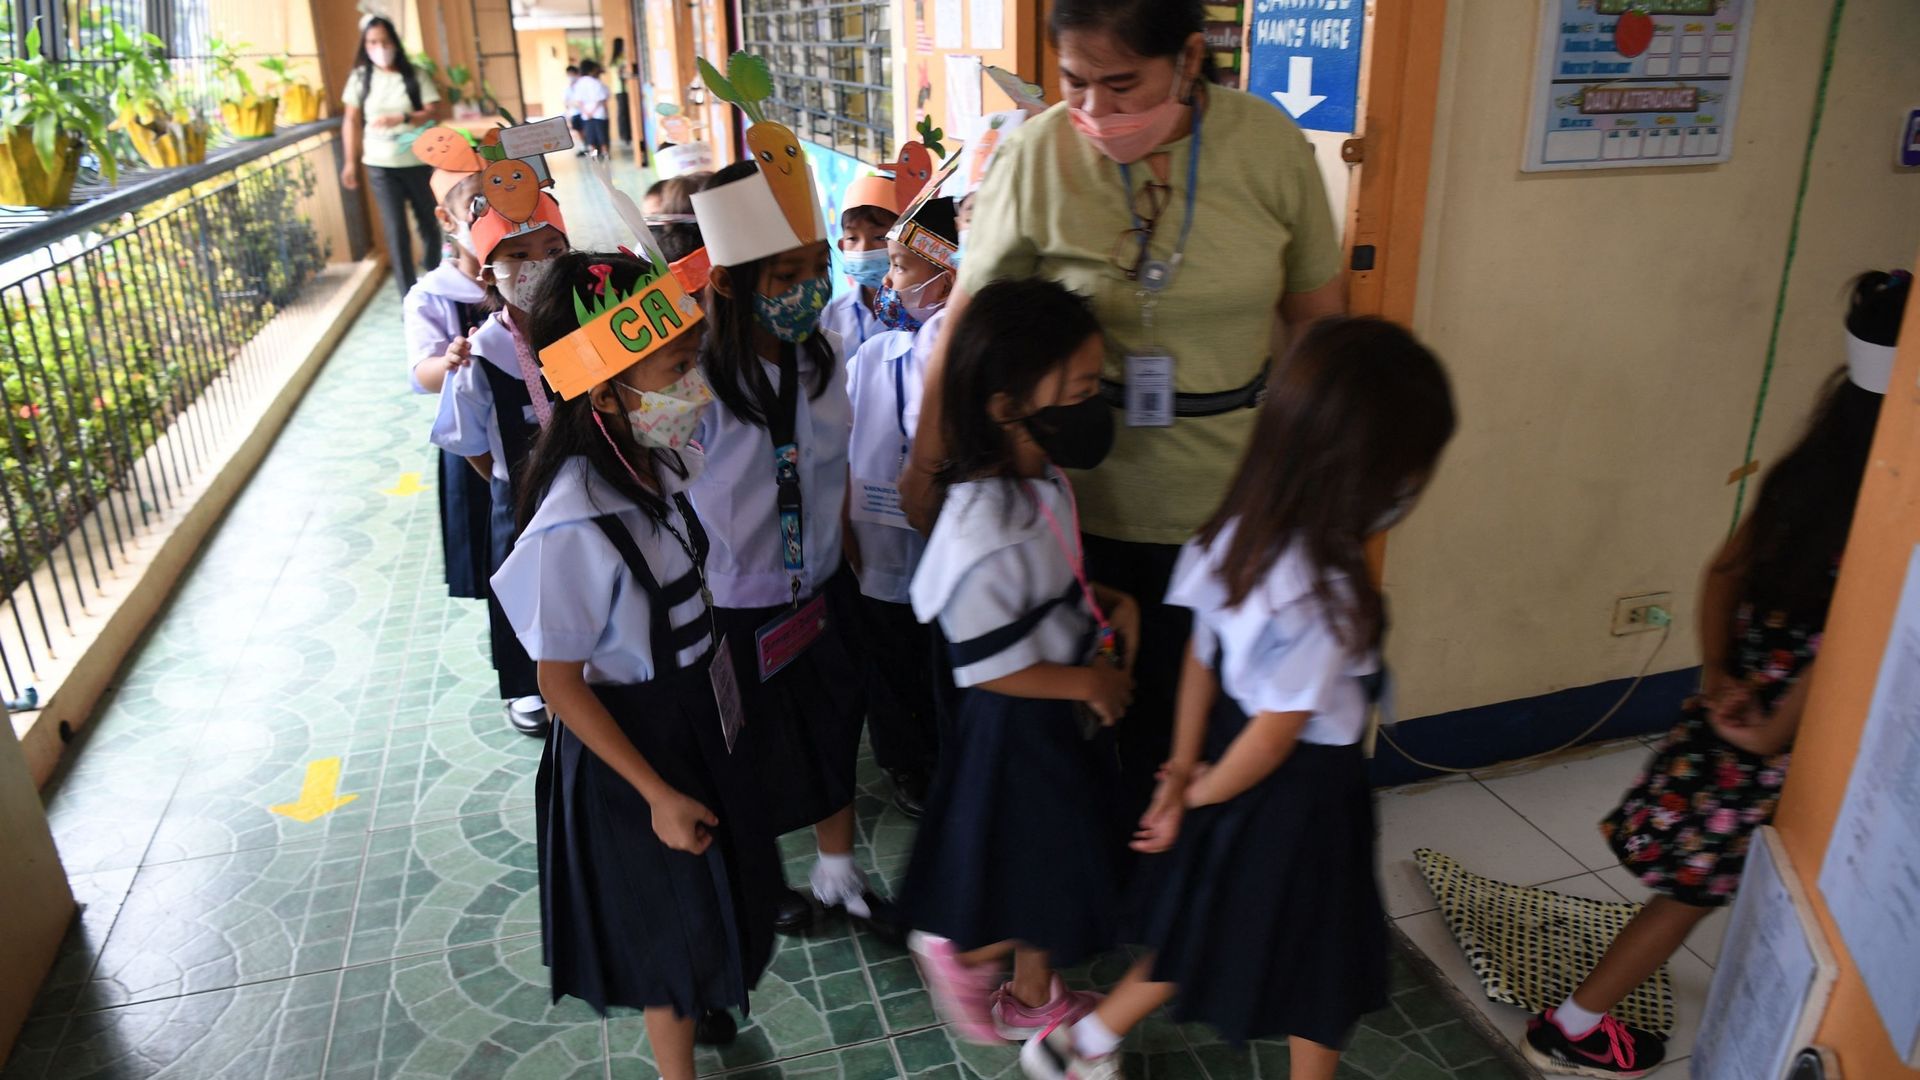 Les écoliers entrent en classe dans une école de Quezon City, dans la banlieue de Manille, le 22 août 2022.